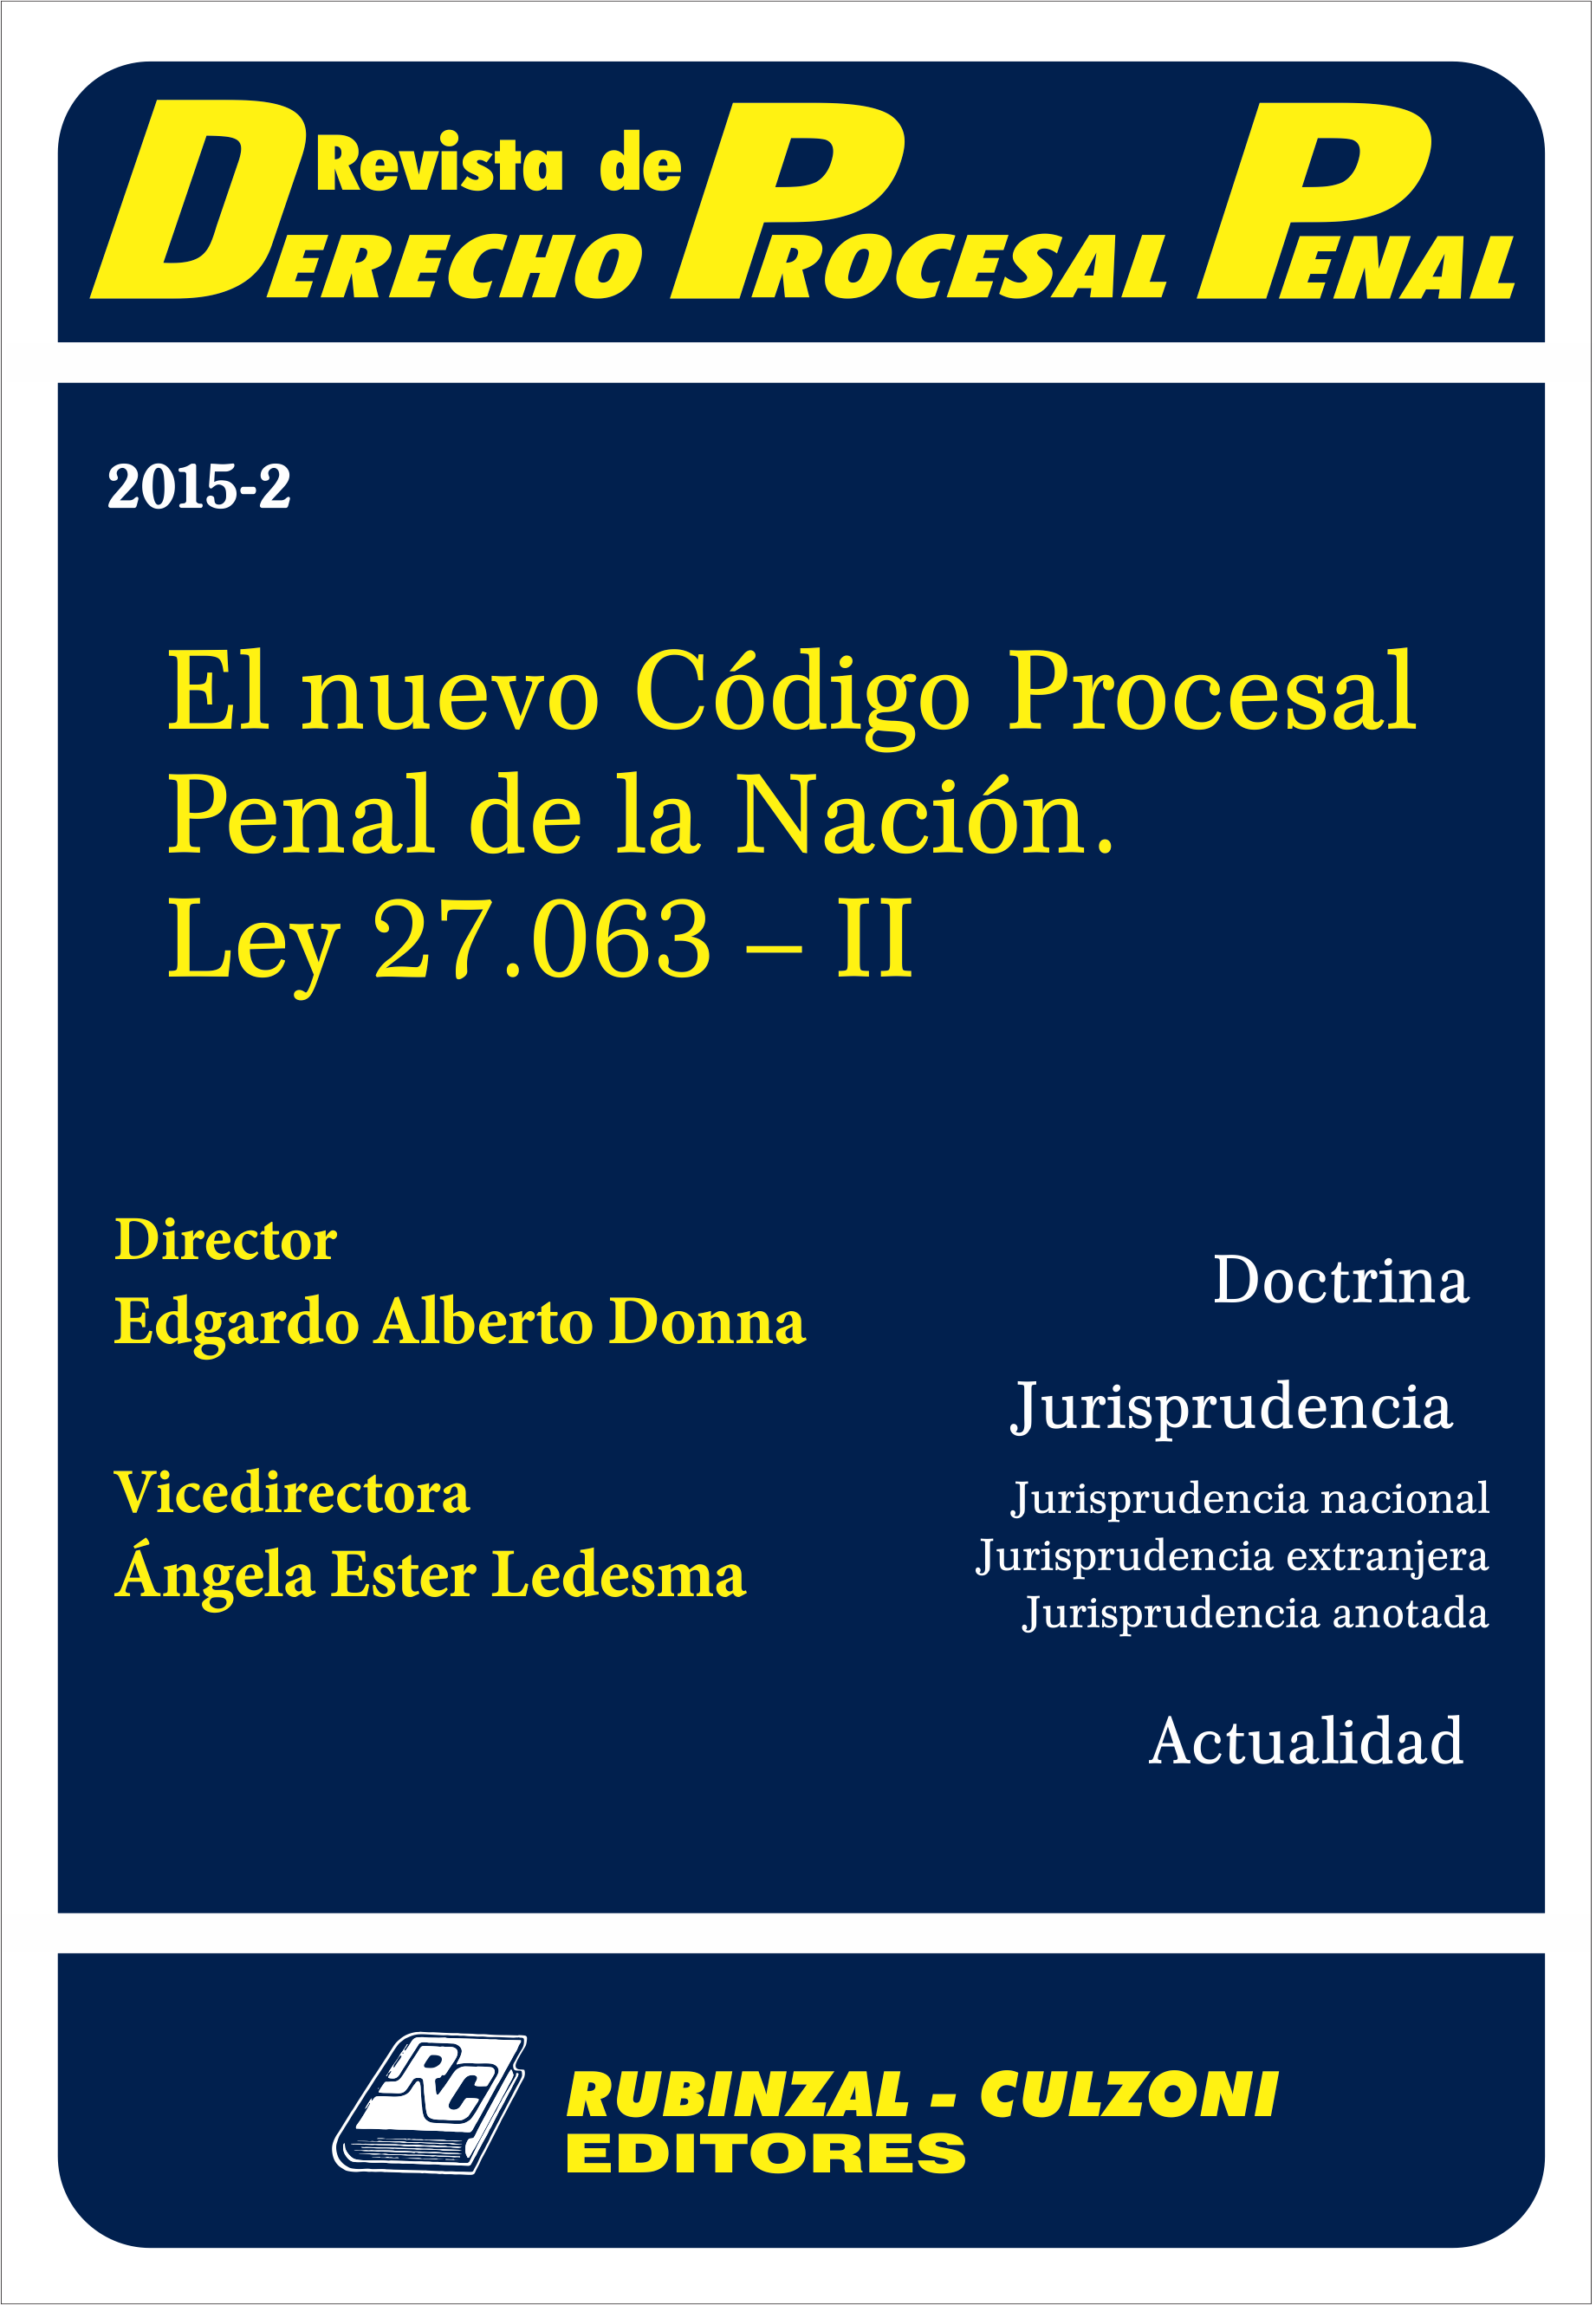 Revista de Derecho Procesal Penal - El nuevo Código Procesal Penal de la Nación